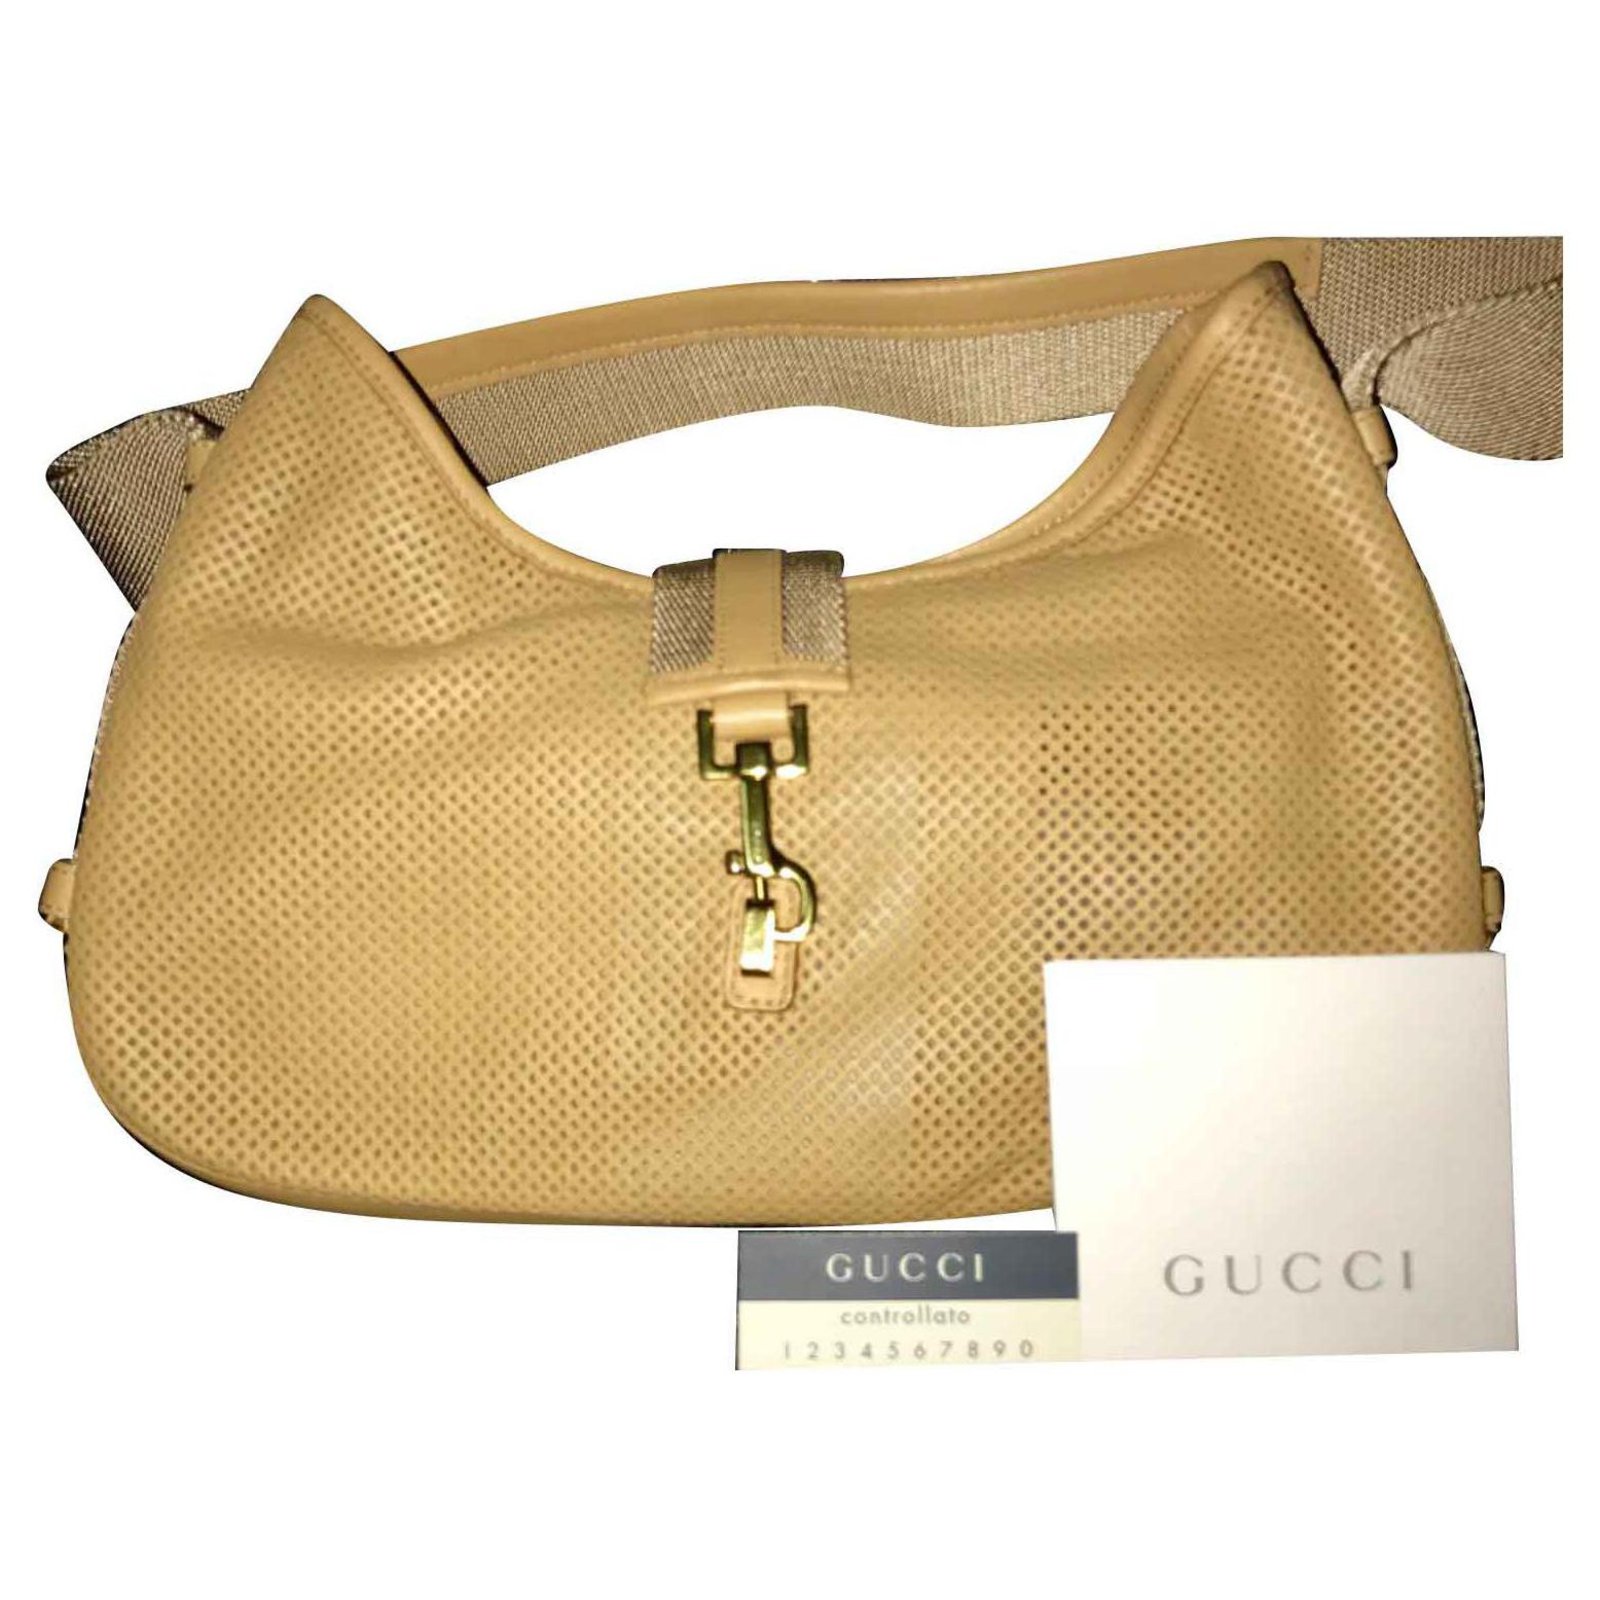 Gucci Jackie Soft Flap Shoulder Bag Leather Orange 2356211